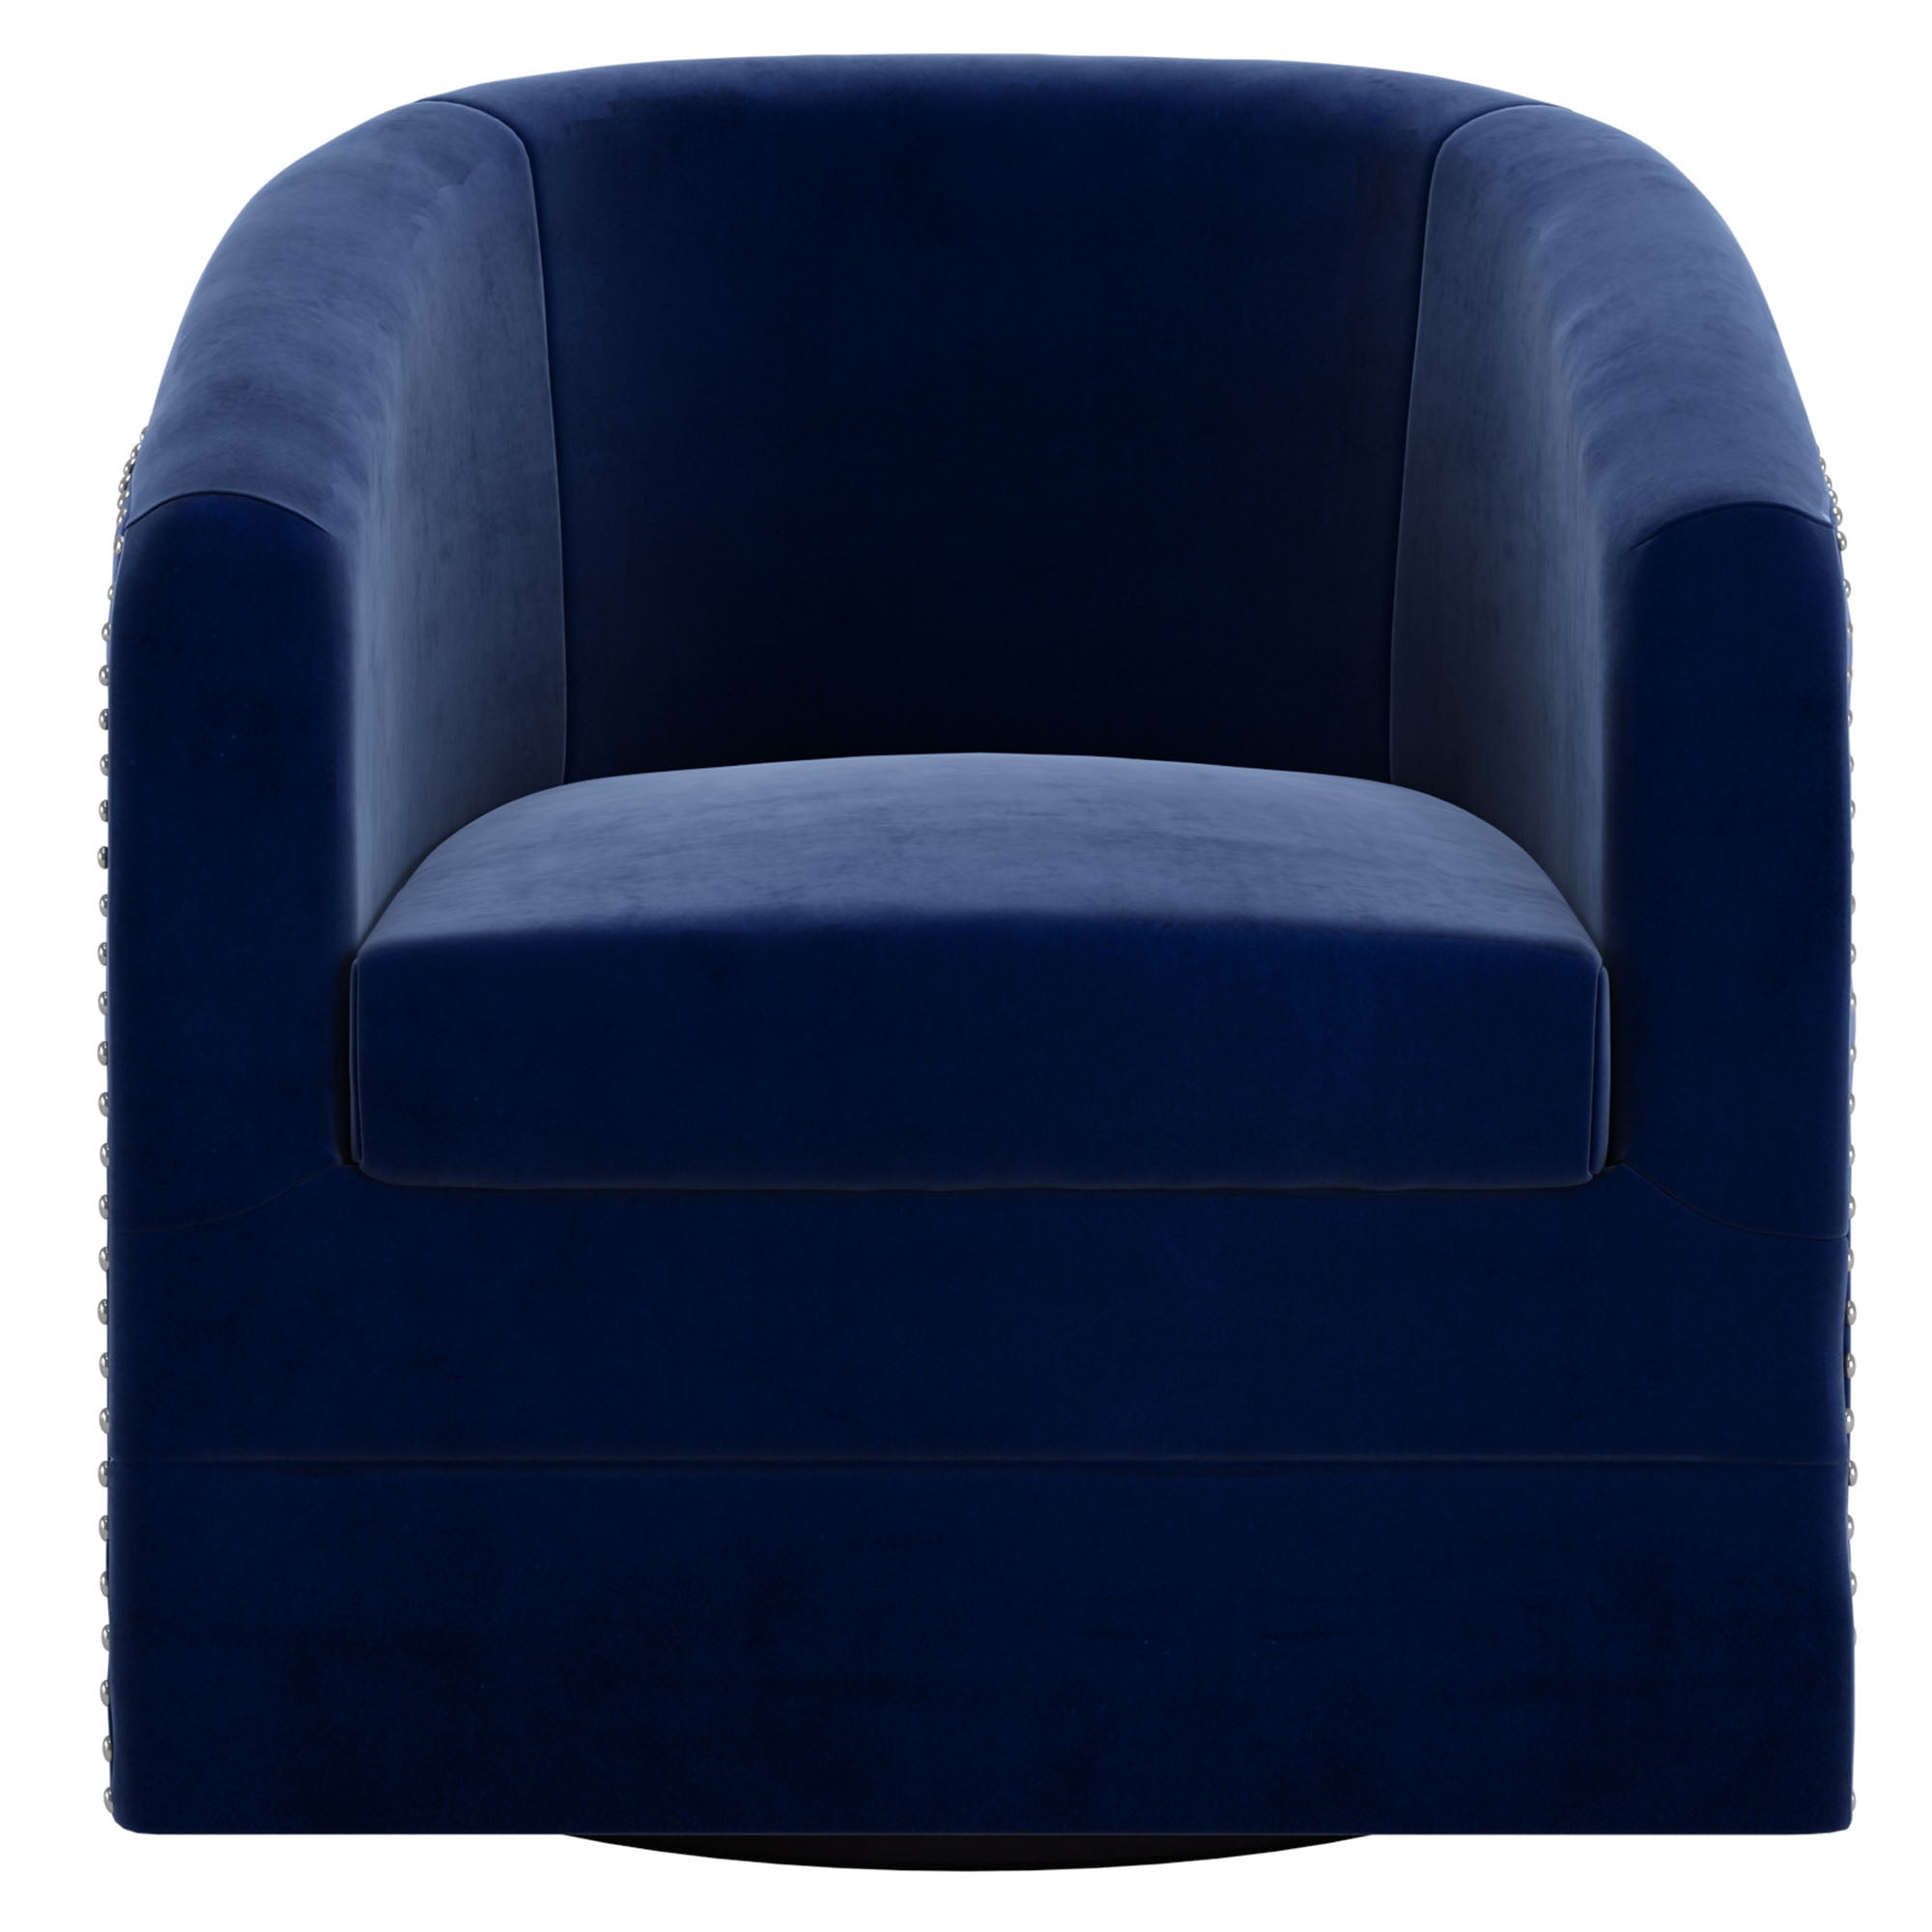 Velci Accent 360 Swivel Chair in Blue 403-373BLU